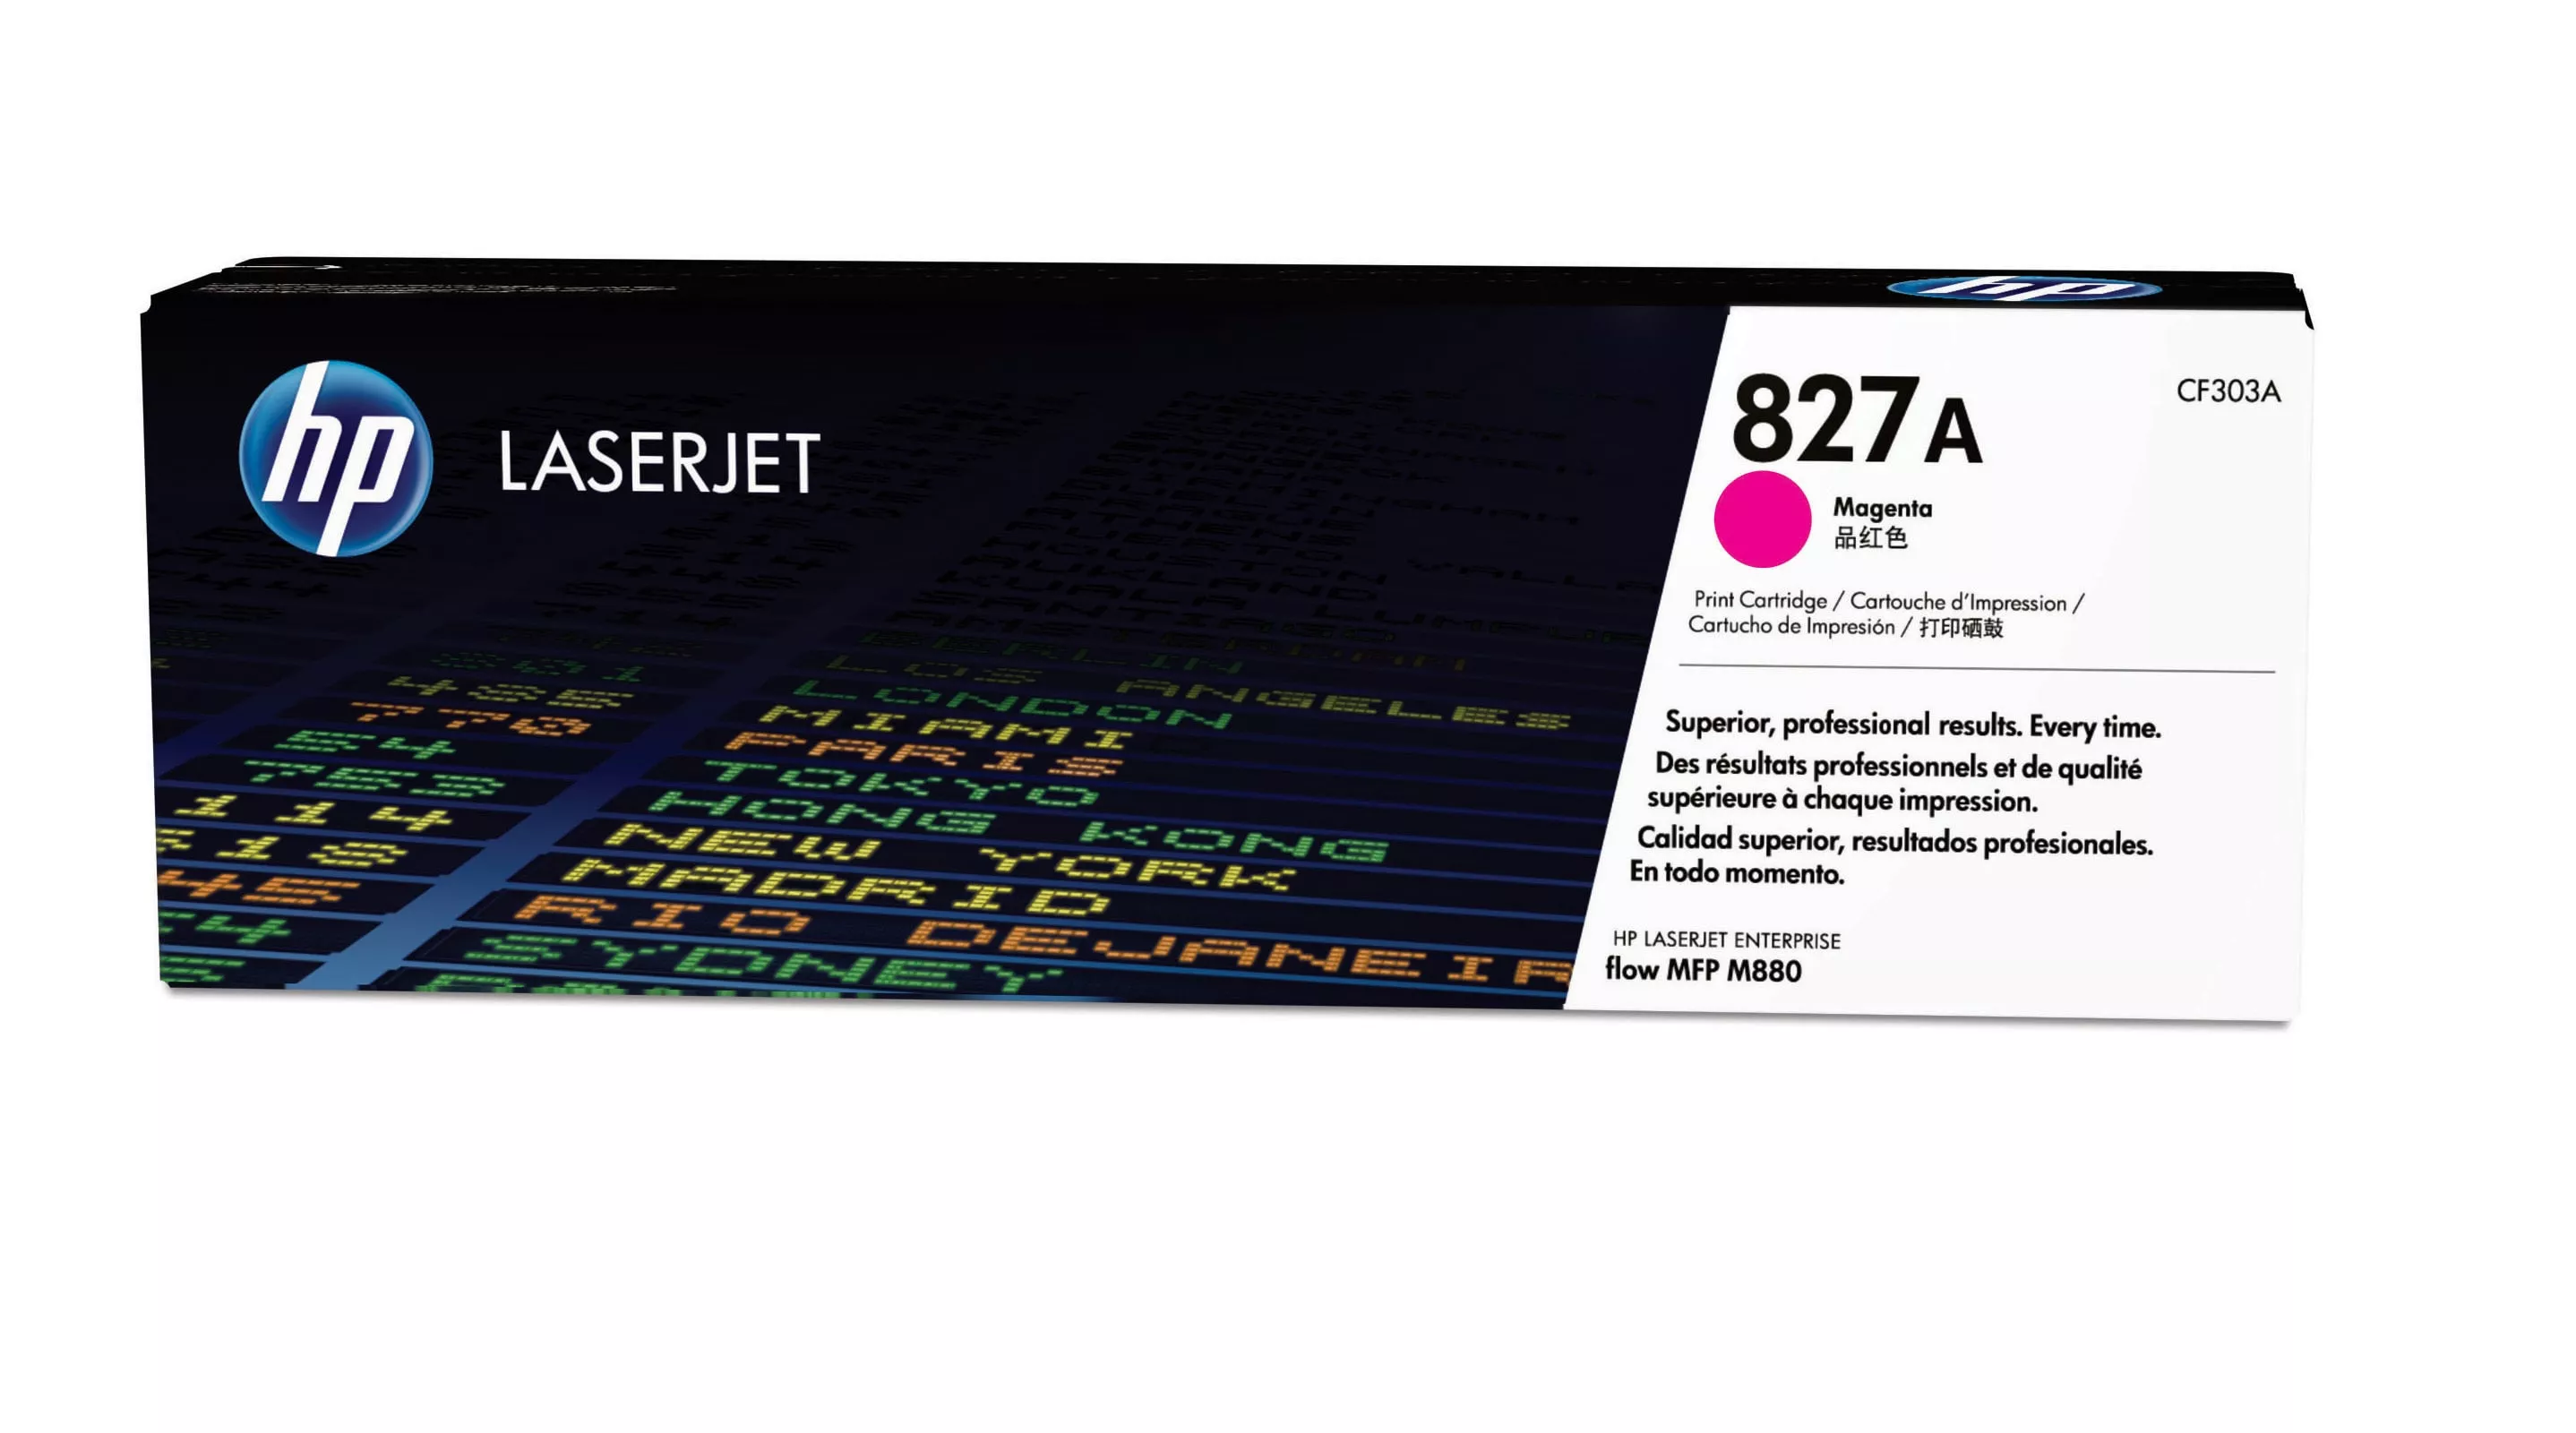 Achat HP 827A original Toner cartridge CF303A magenta standard au meilleur prix